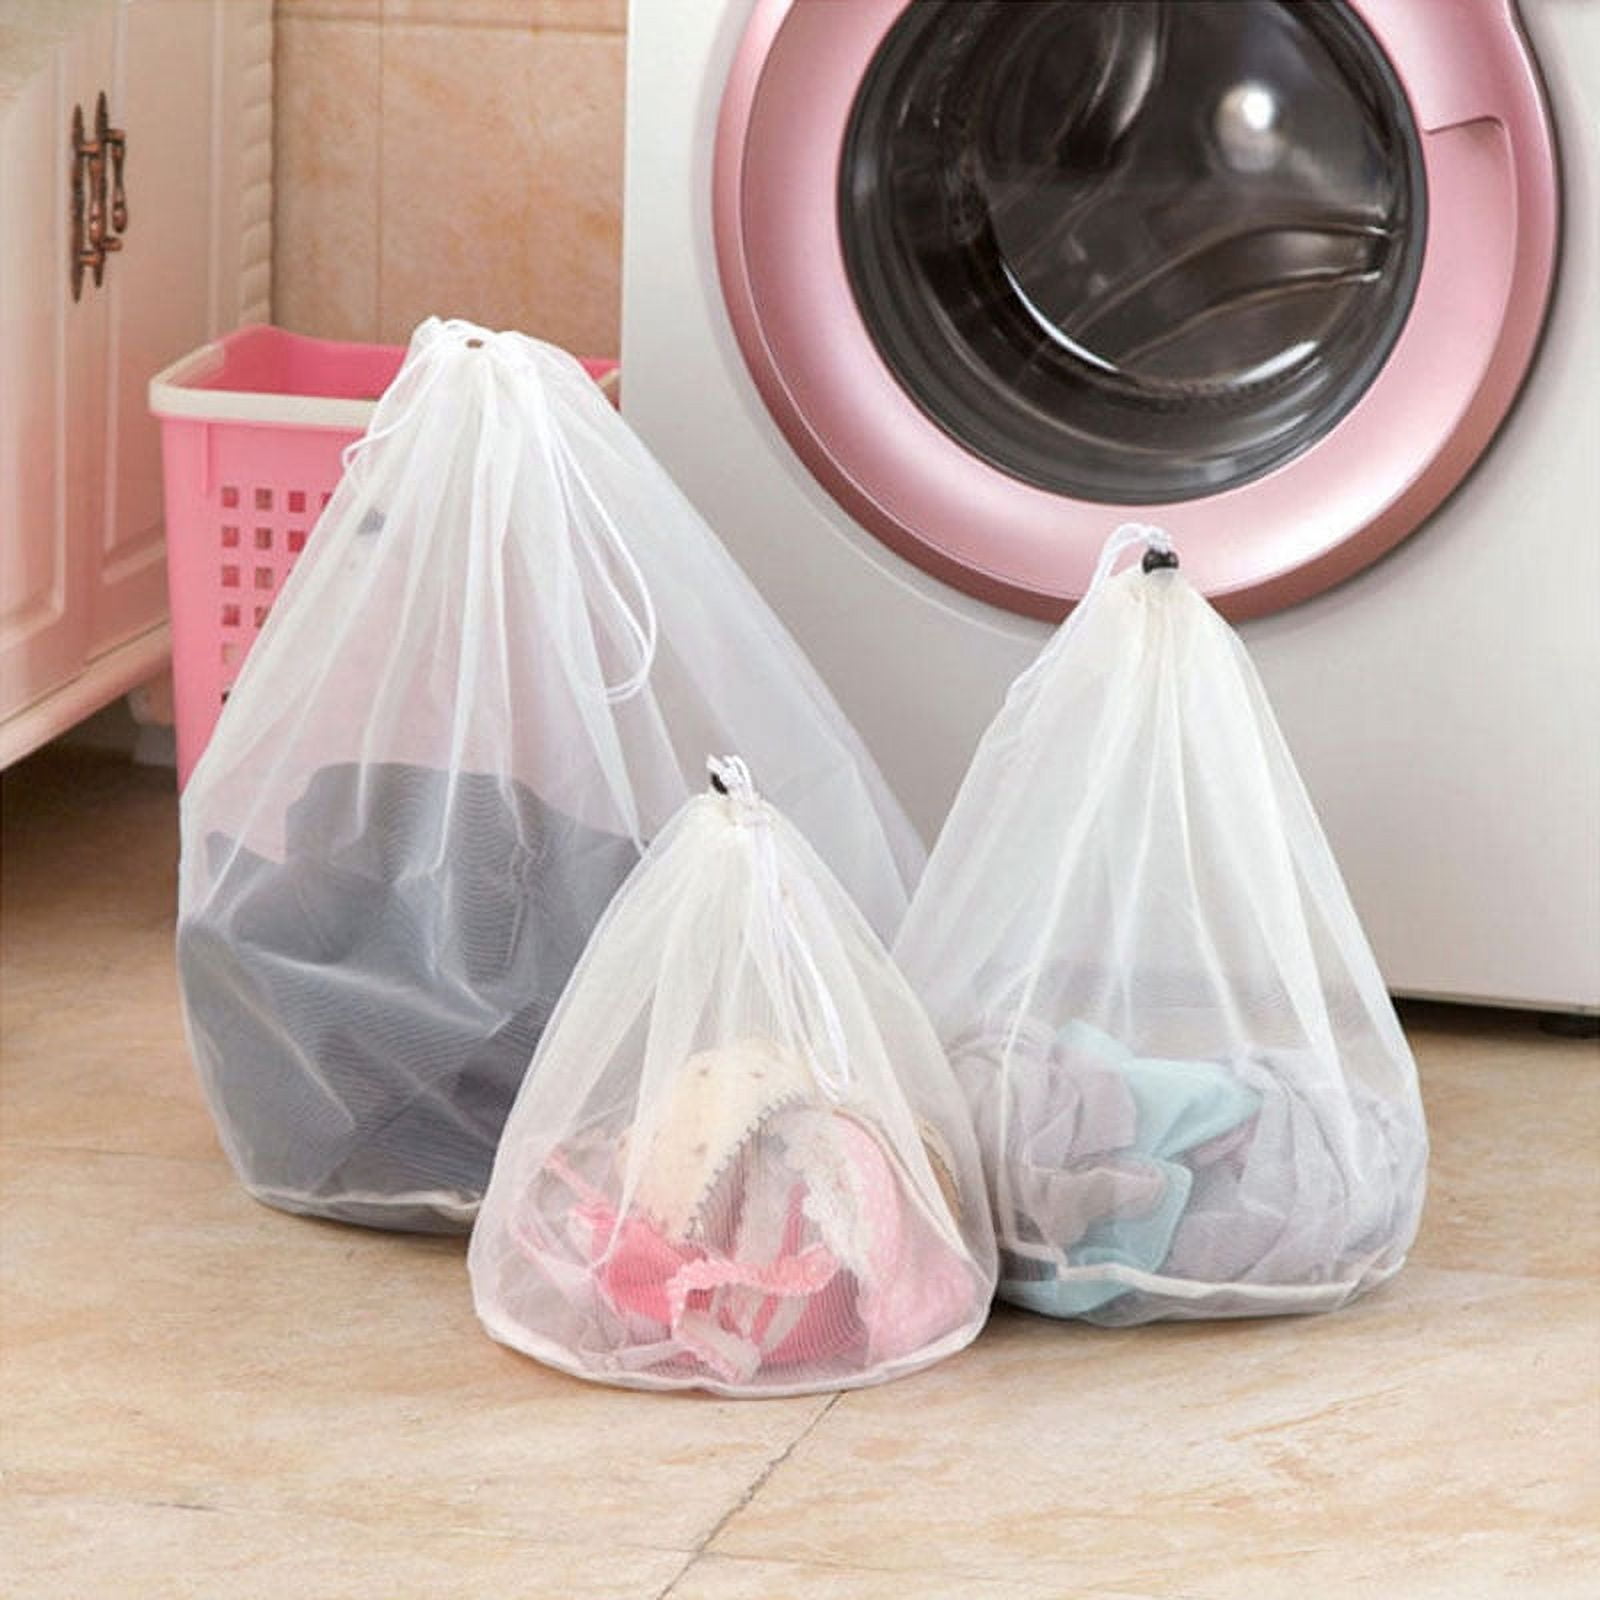 Laundry Bag for Washing Machine [The Original] Set of 3 Laundry